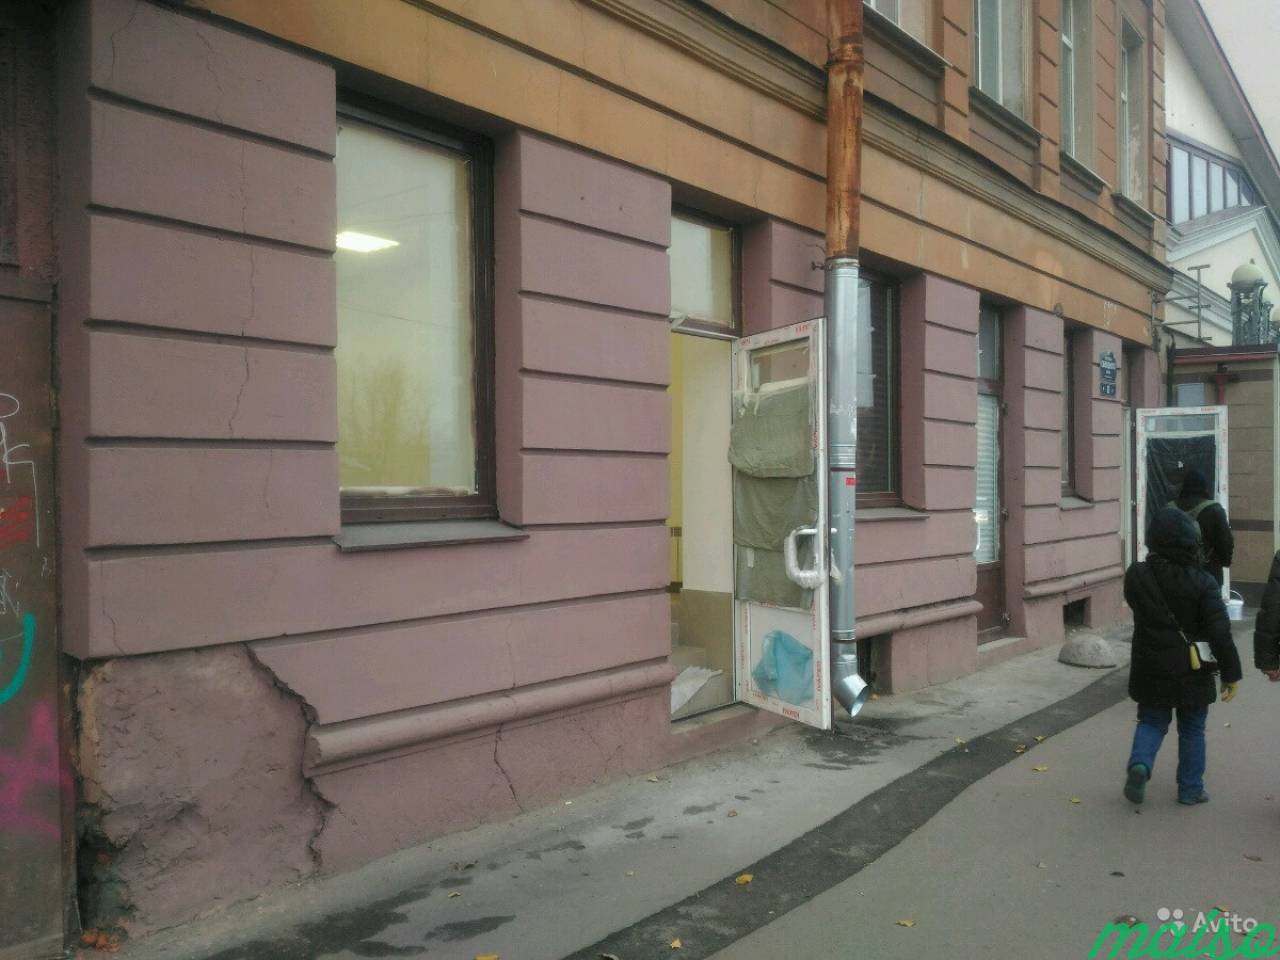 Помещение коммерческое в Санкт-Петербурге. Фото 2